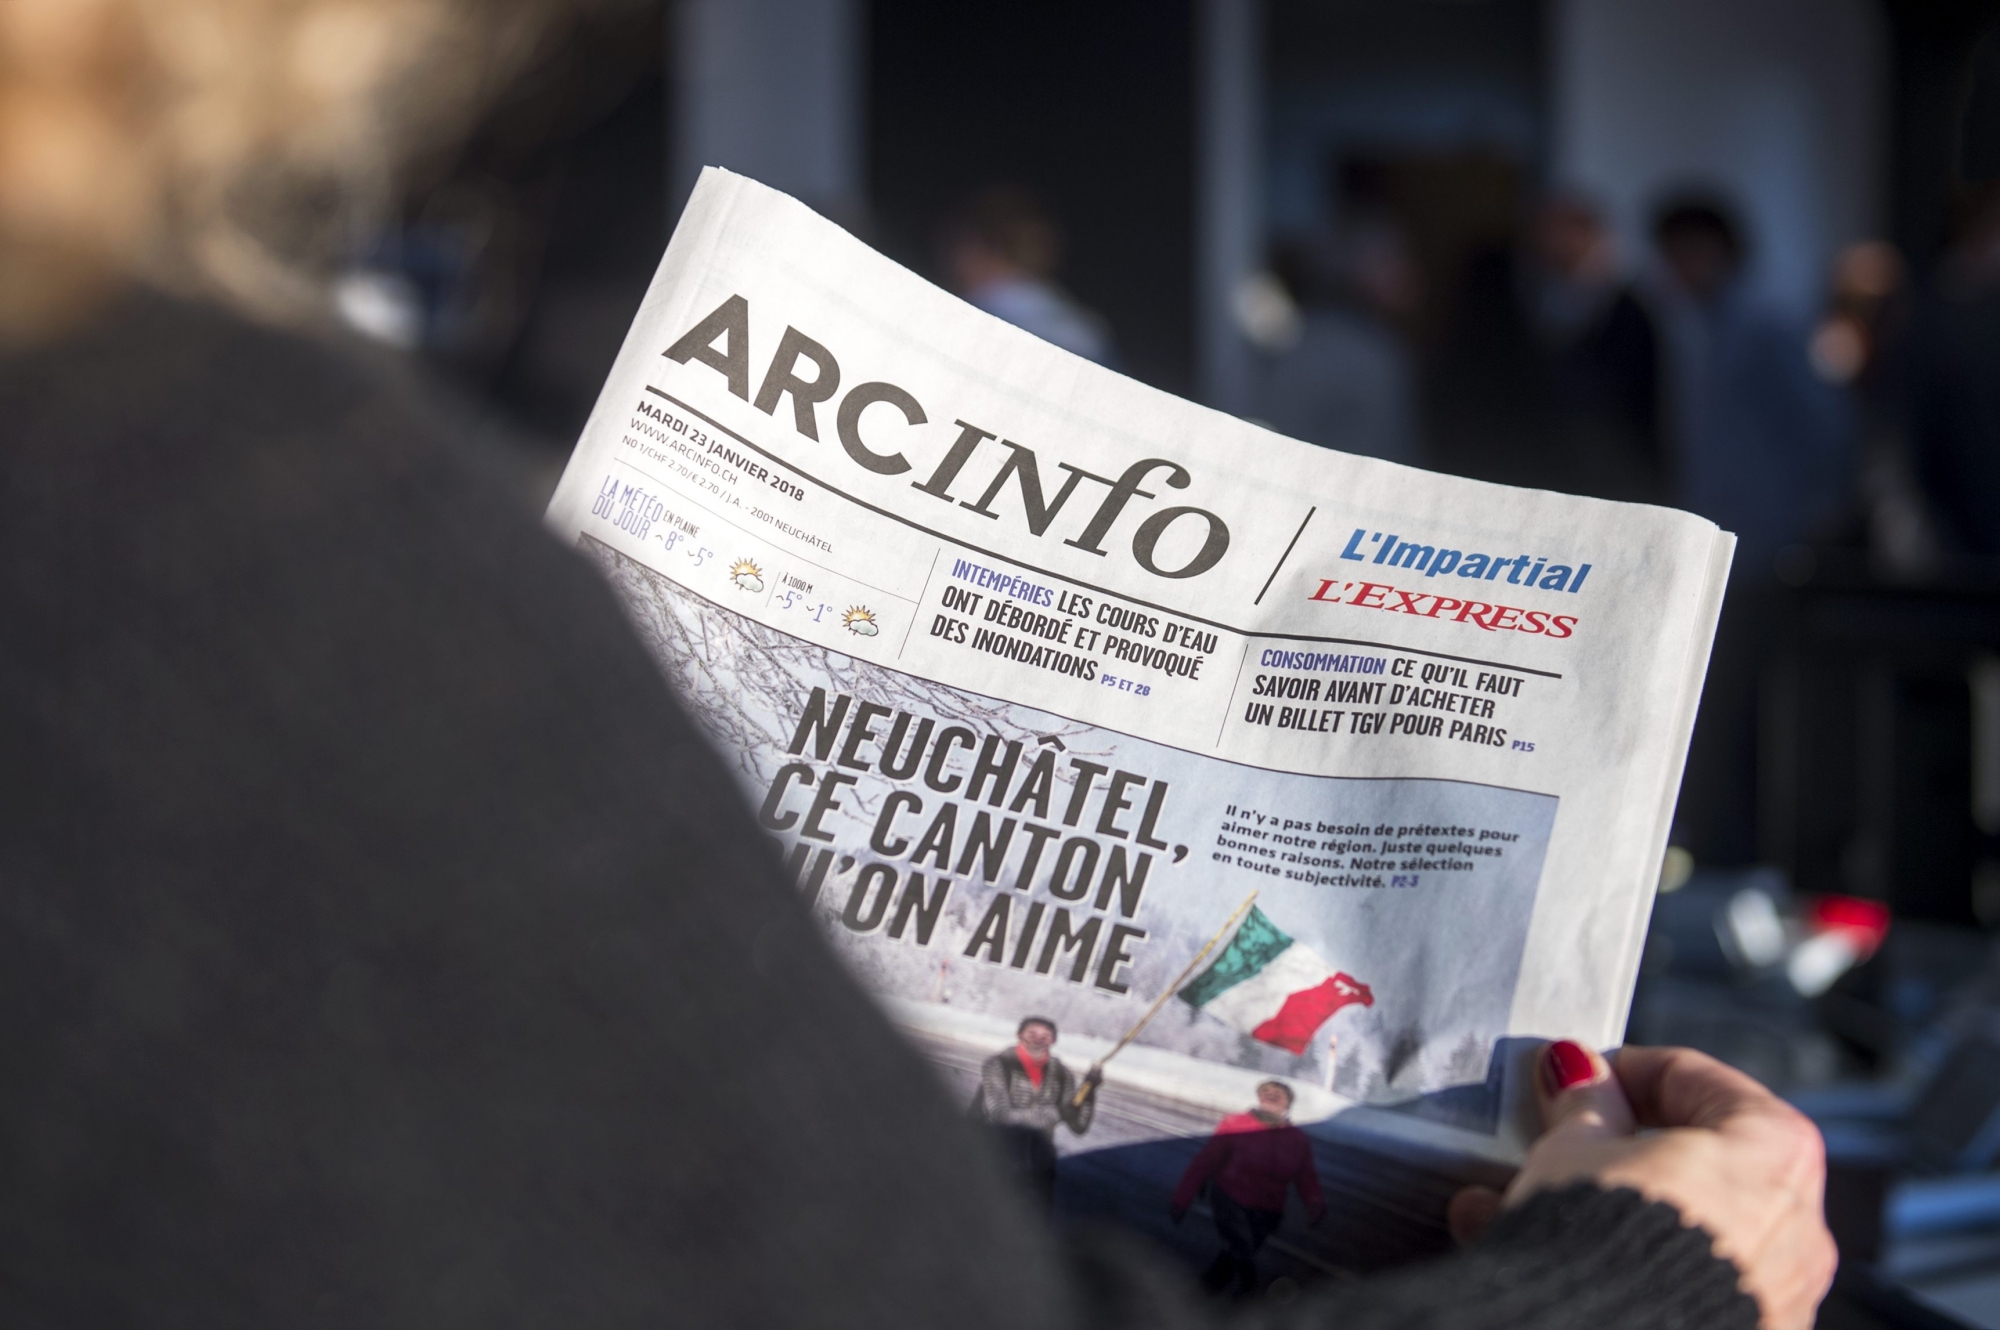 Dans le cadre de la sortie du premier numero d'arcinfo, la redaction d'Arcinfo faisait Portes-ouvertes dans leurs locaux     Neuchatel, le 23 janvier 2018  Photo: Leo Duperrex